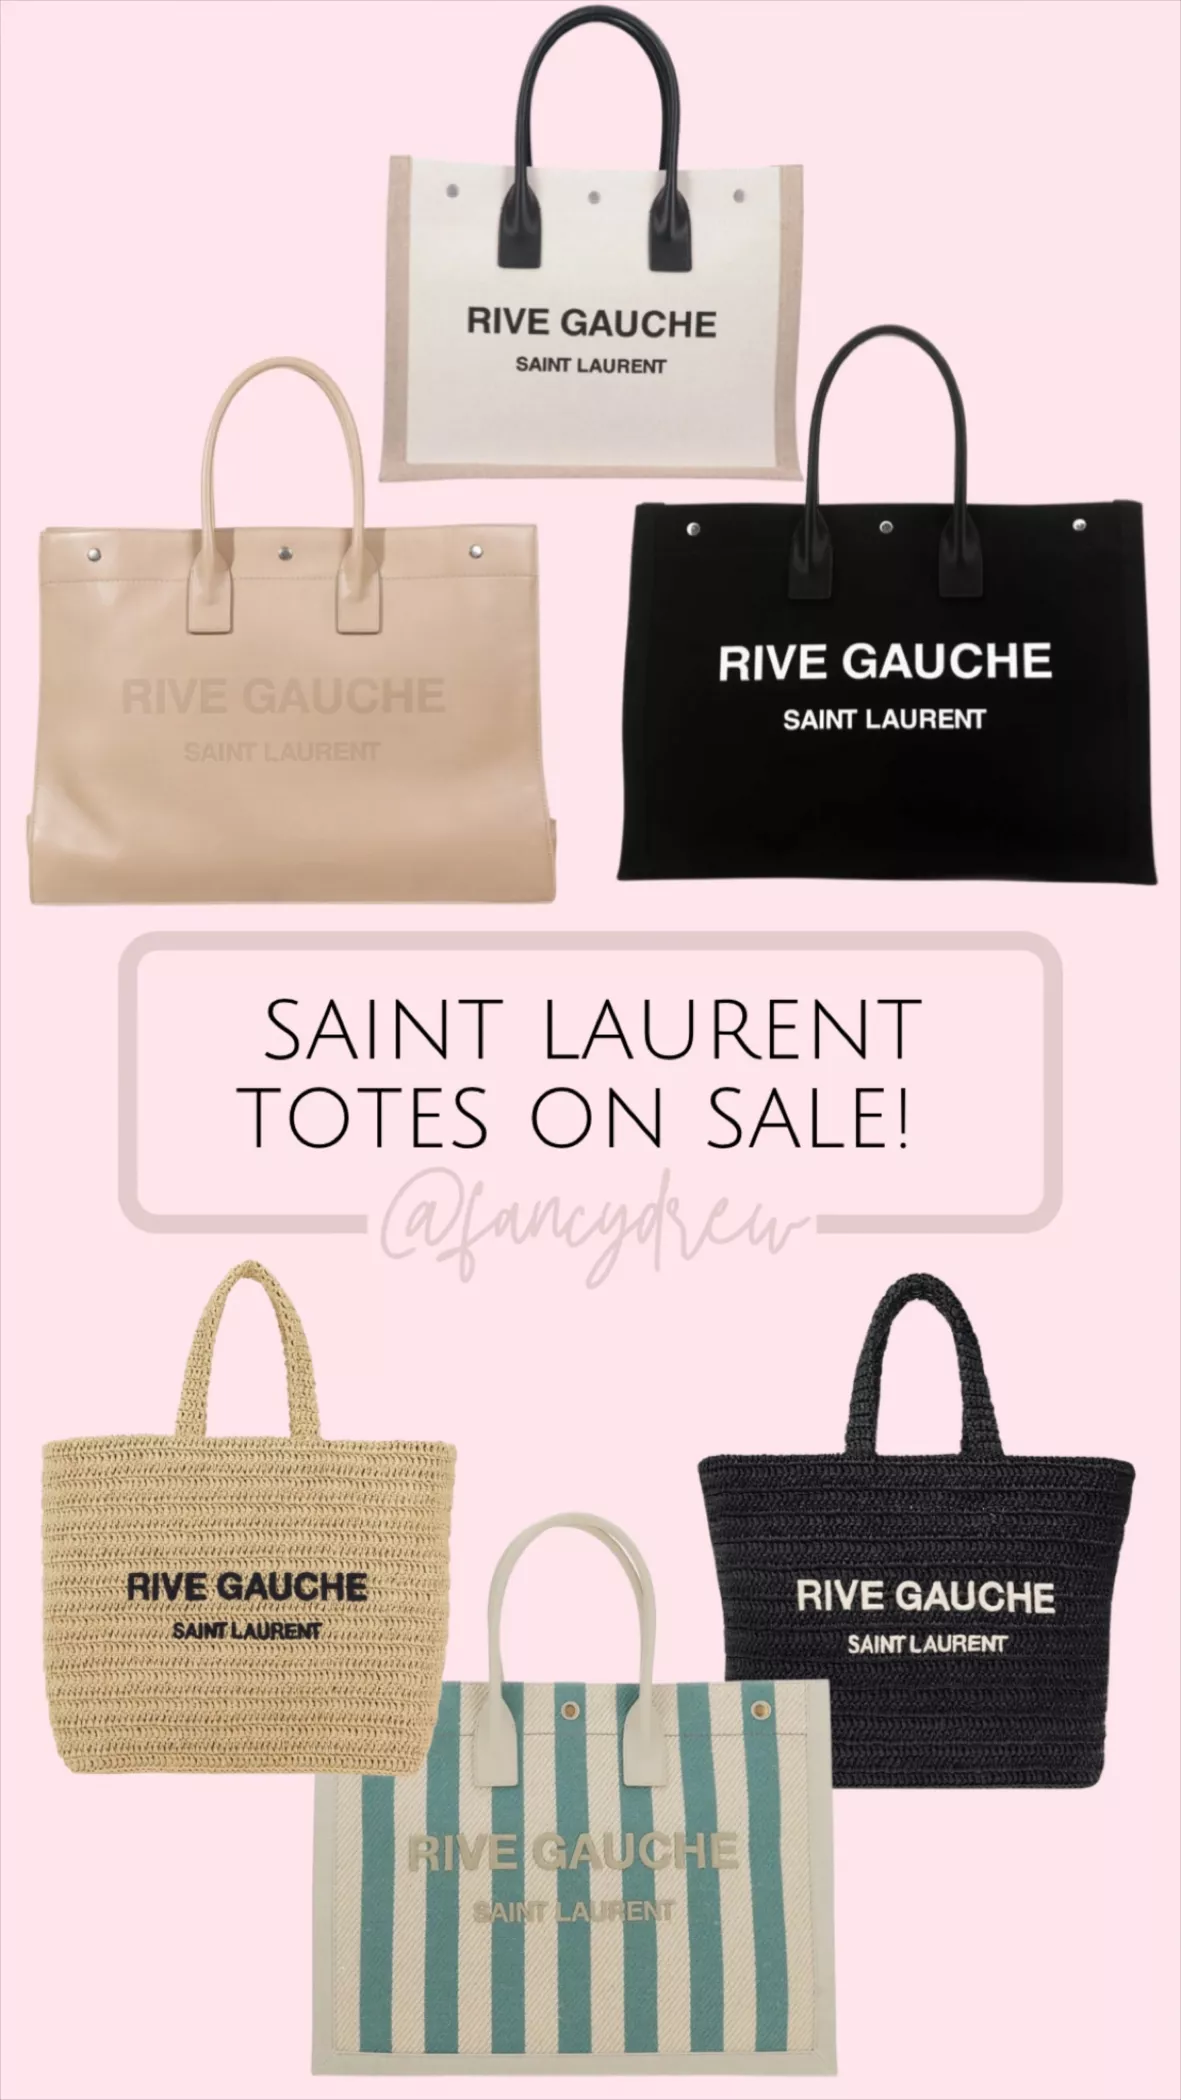 Saint Laurent Rive Gauche Tote Bag - Farfetch